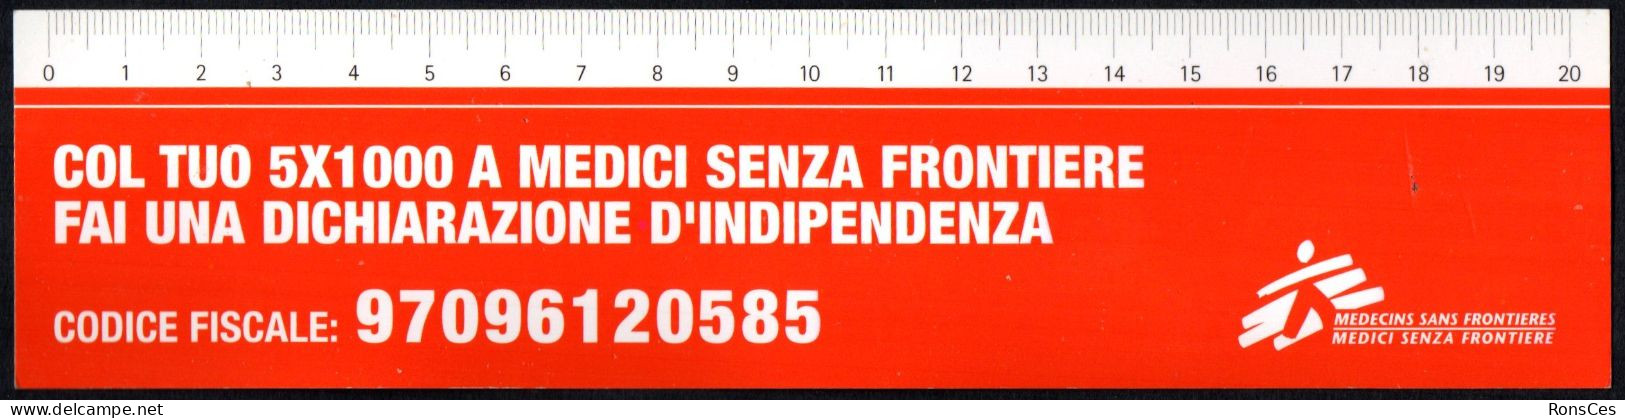 ITALIA SEGNALIBRO / BOOKMARK / RIGHELLO - MEDICI SENZA FRONTIERE COL TUO 5x1000 FAI UNA DICHIARAZIONE D'INDIPENDENZA - I - Lesezeichen